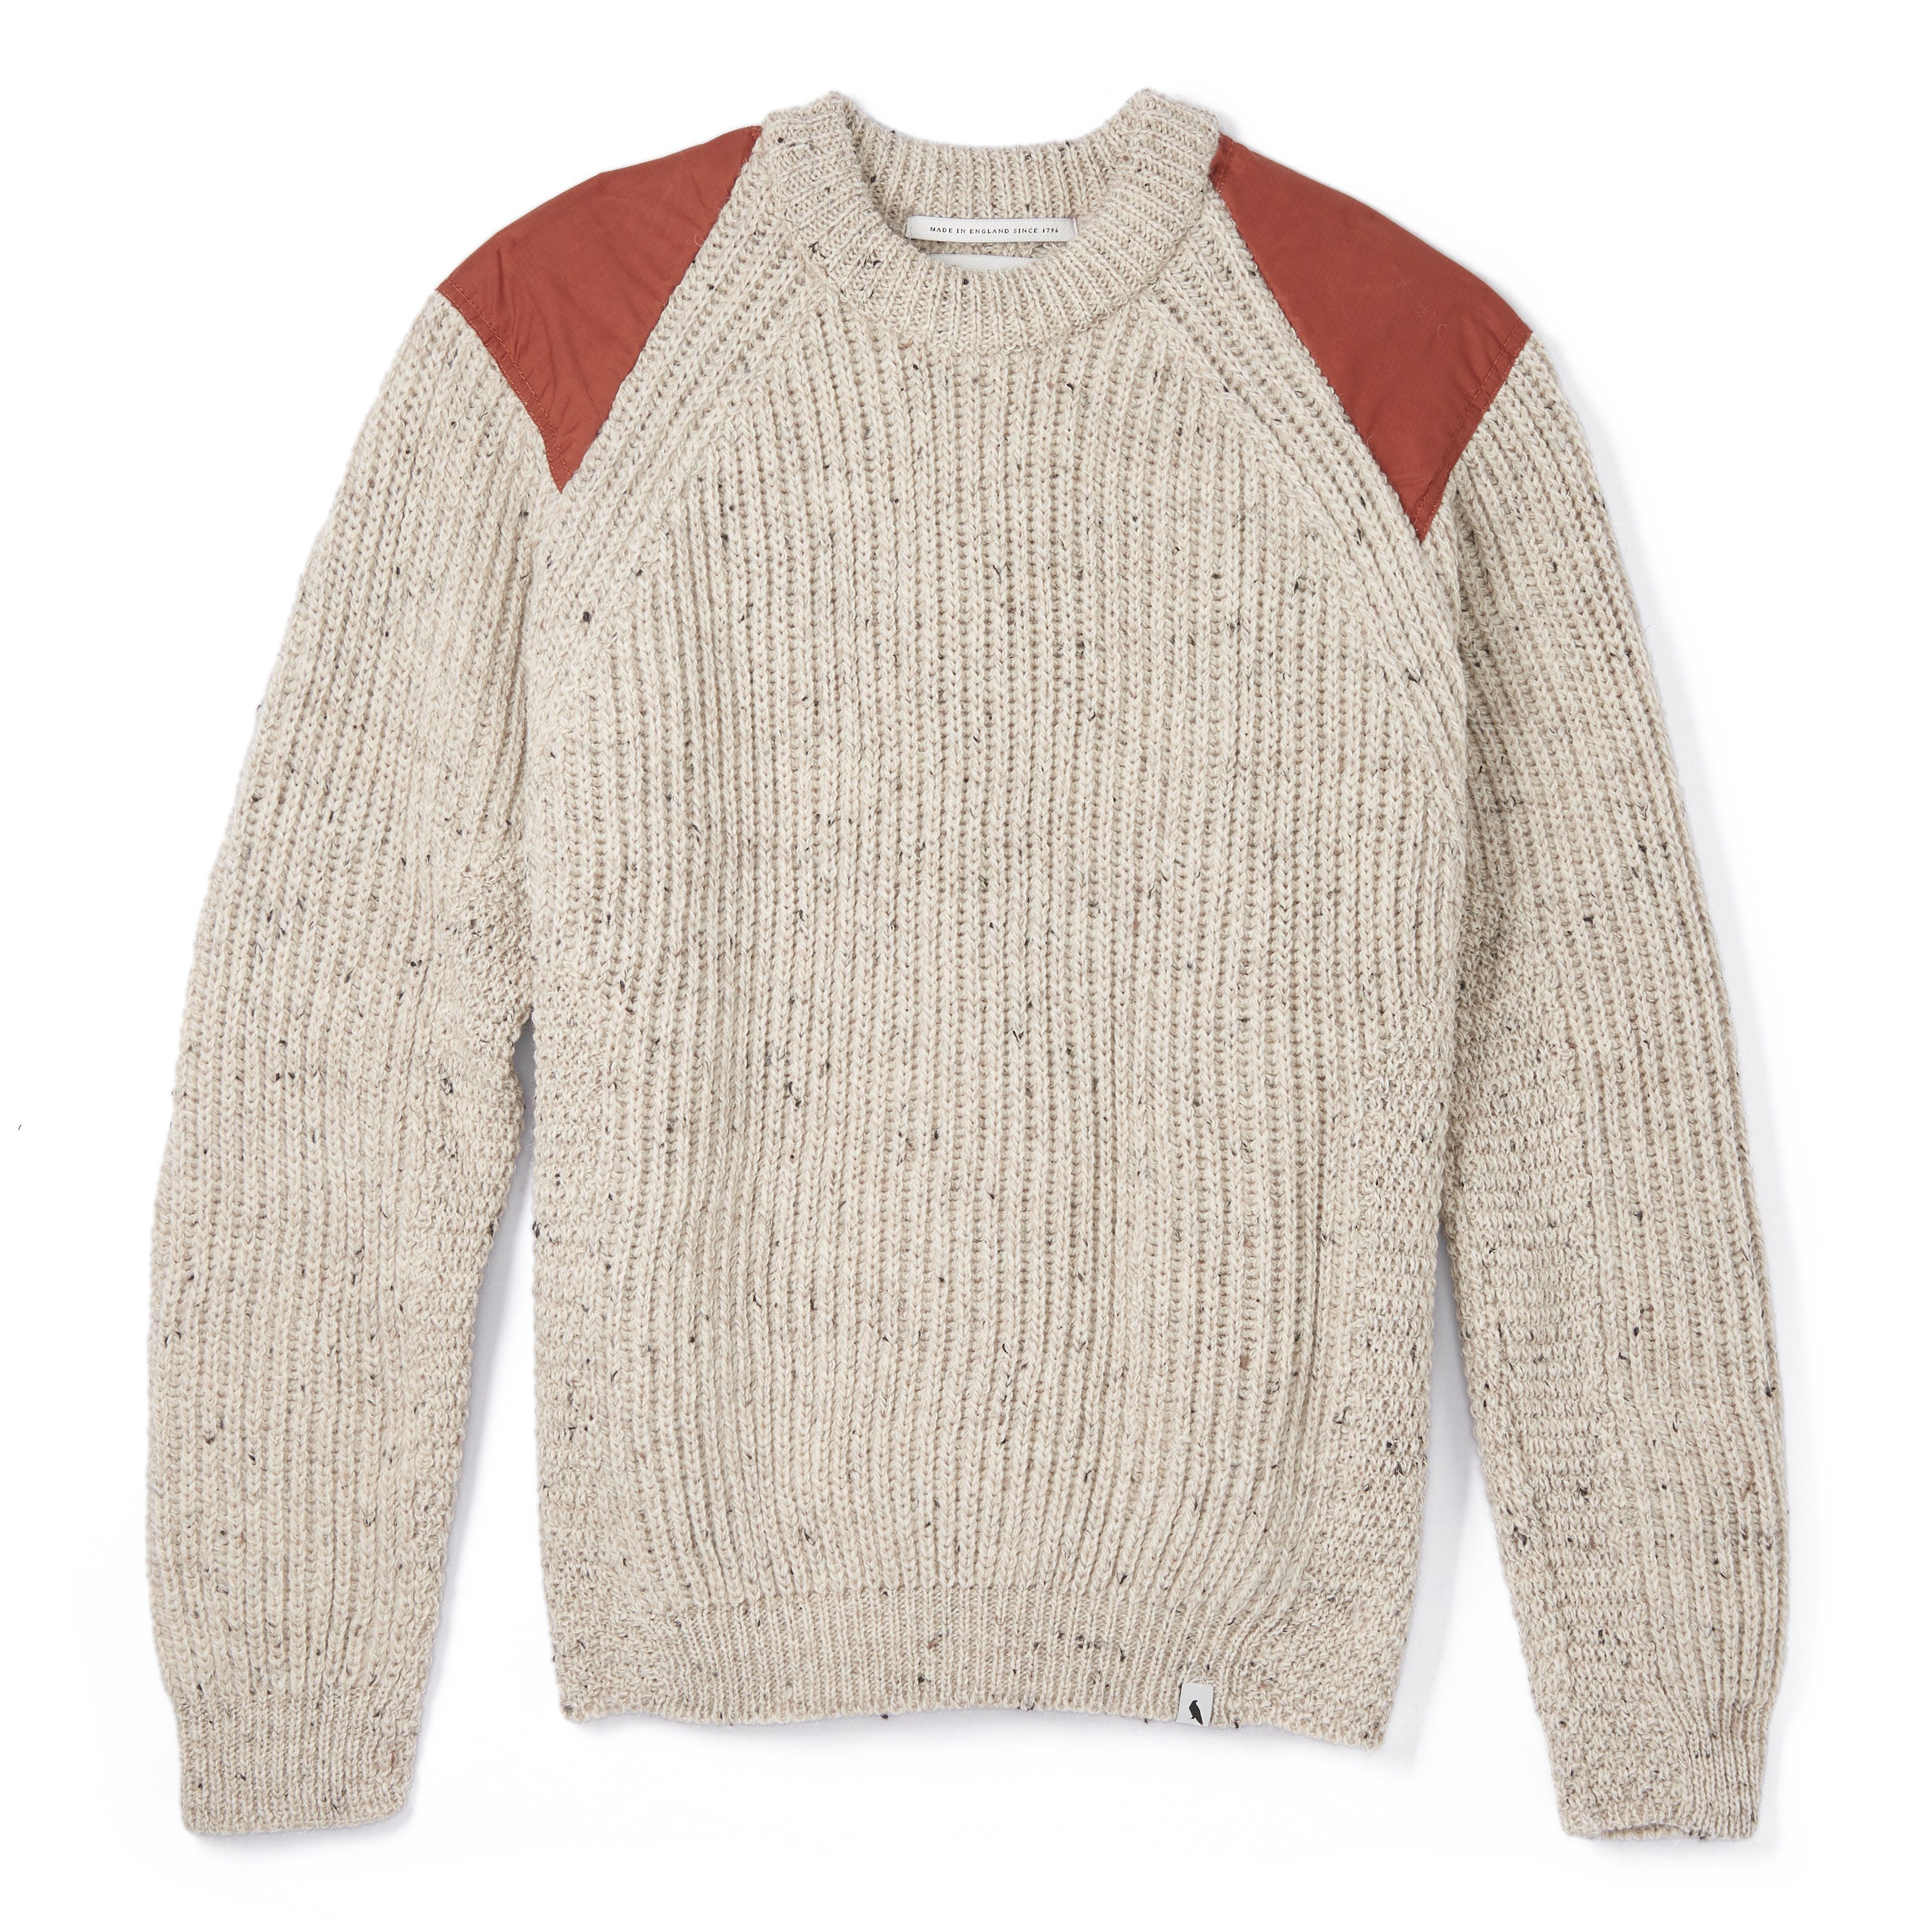 British Commando Wool Sweater